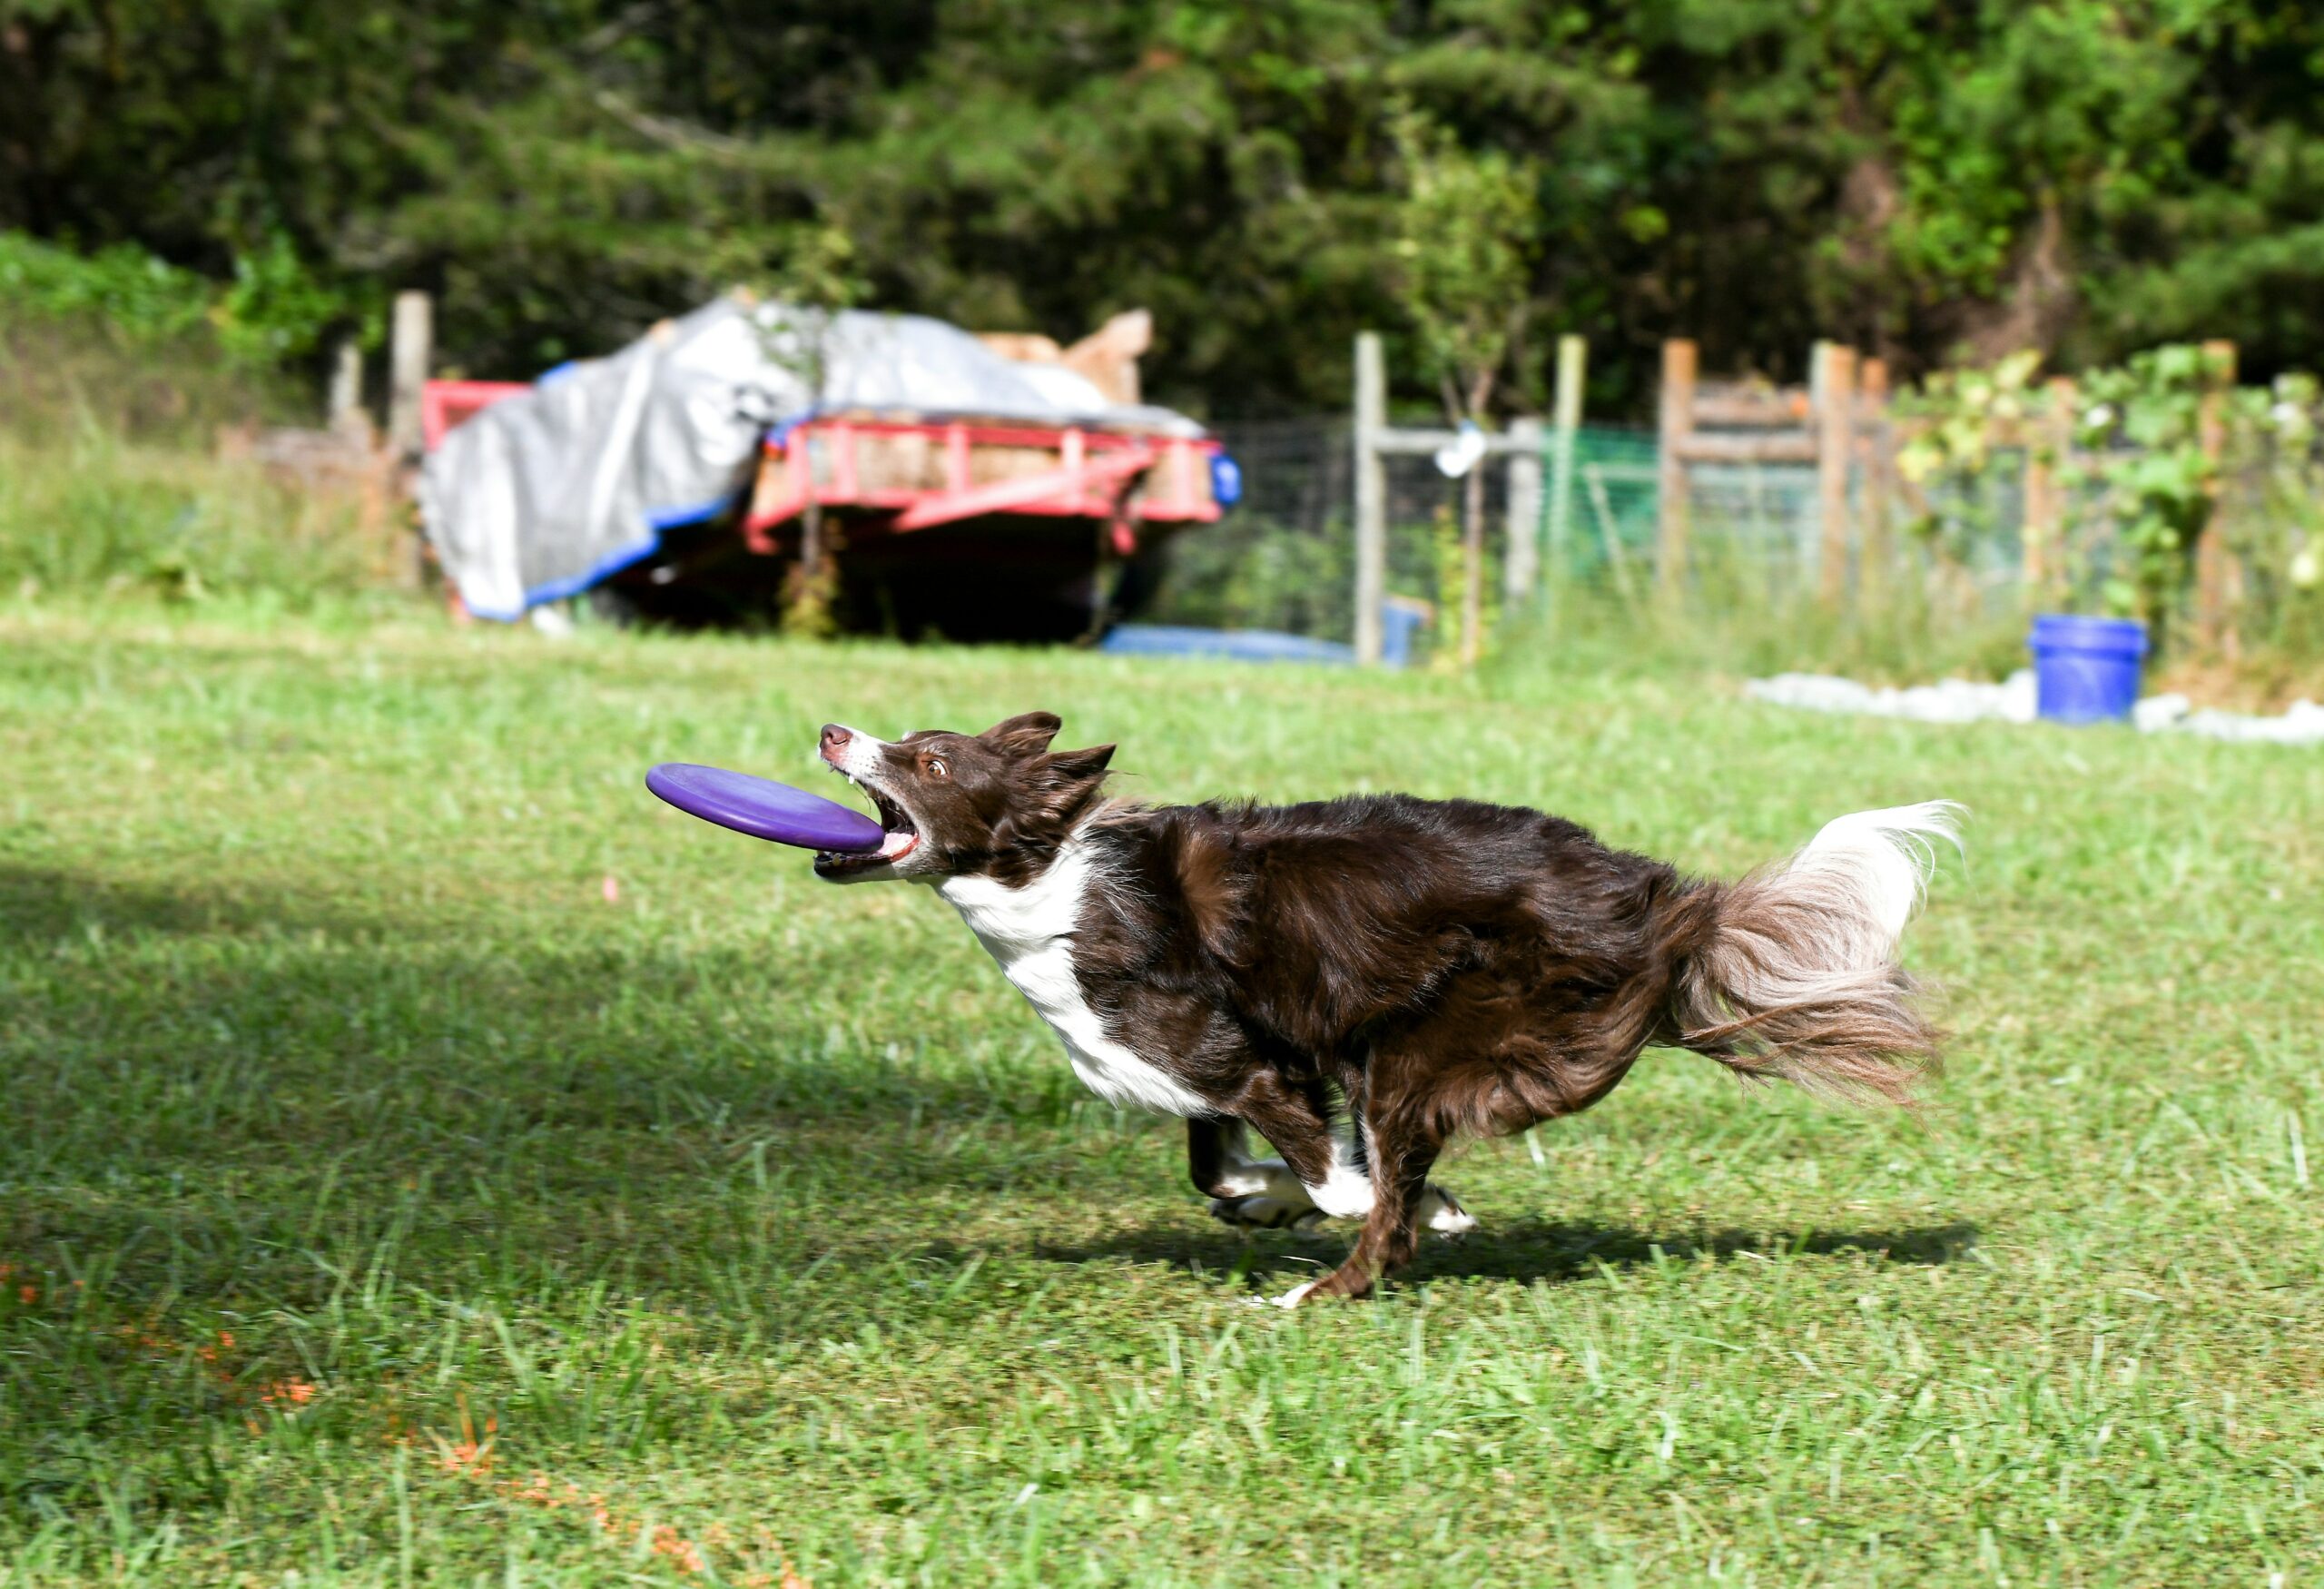 Ein Hund kurz davor eine Frisbee-Scheibe einzufangen